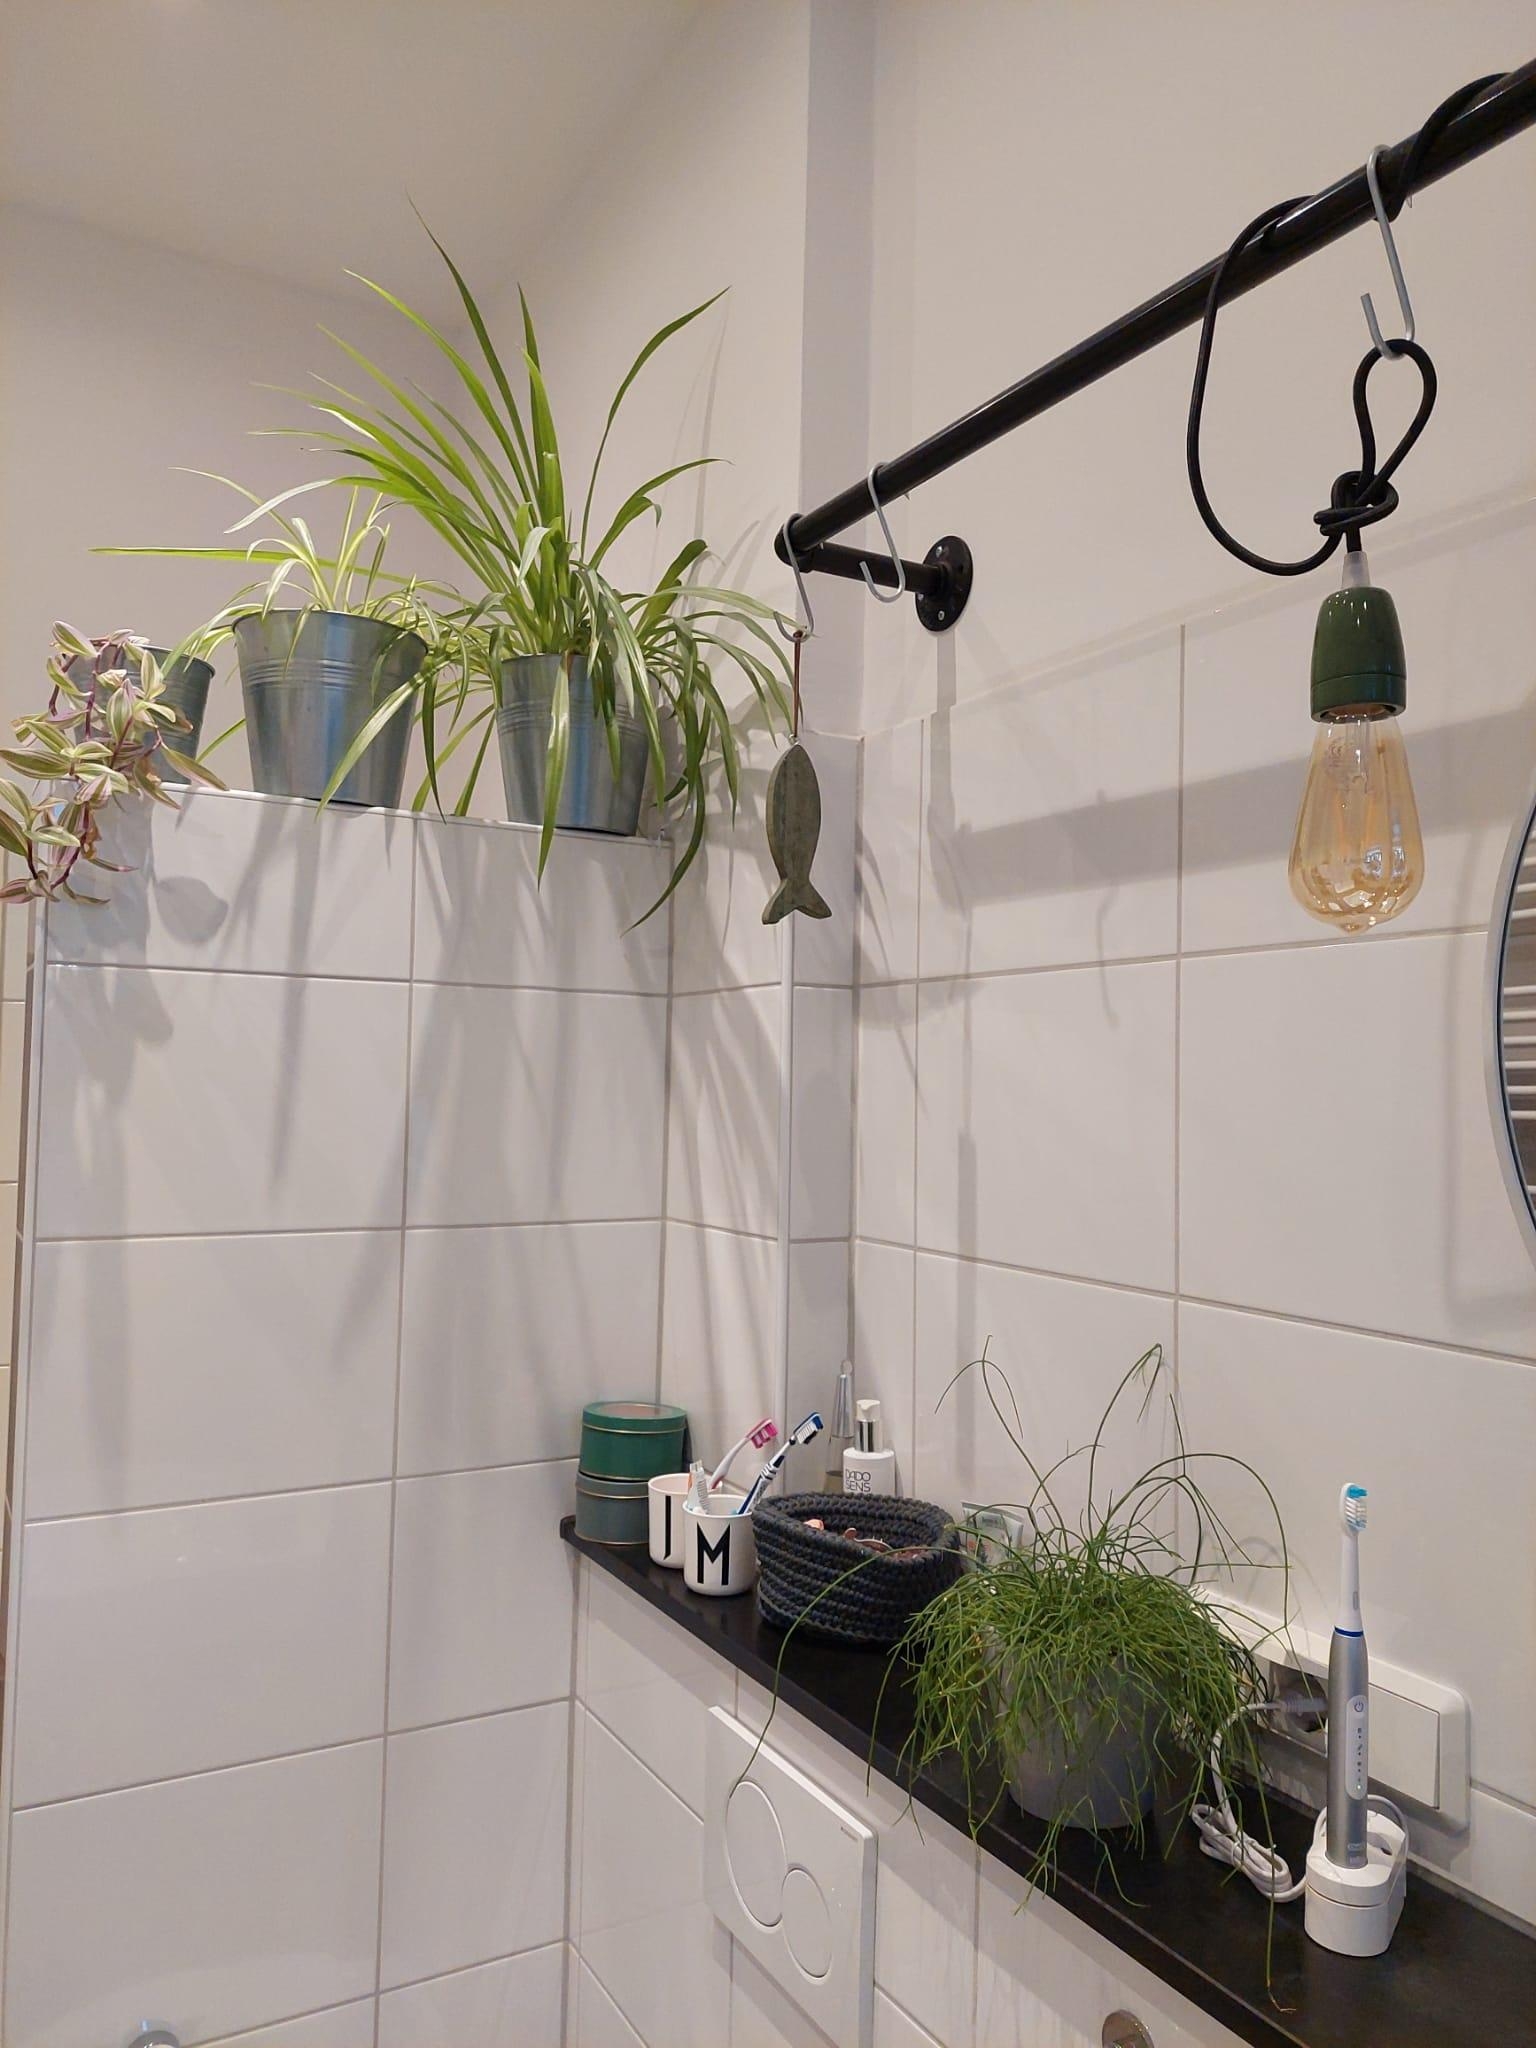 #livingchallenge #greenliving
Auch im Badezimmer gibt es bei uns viele Pflanzen.